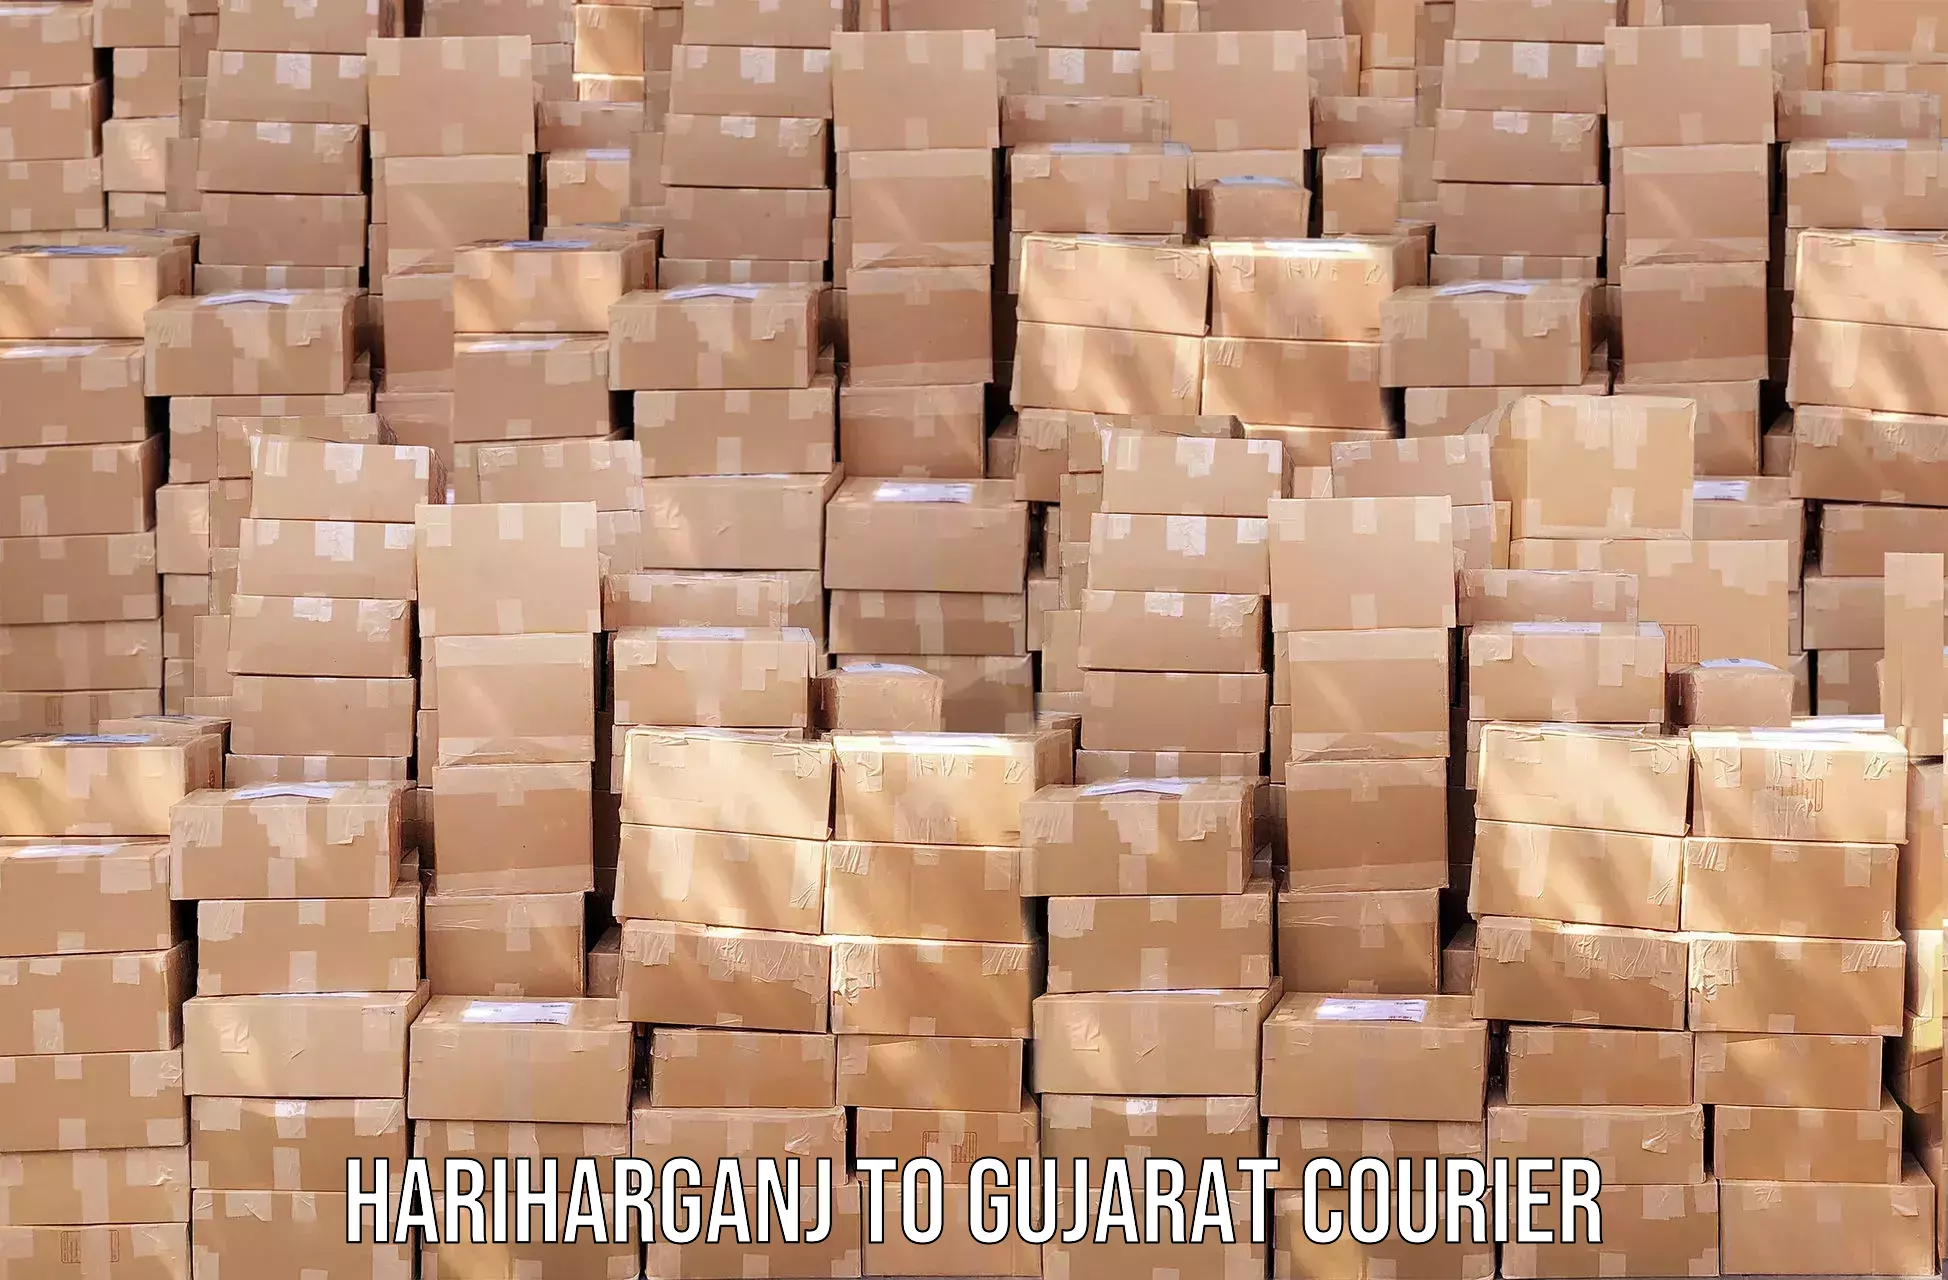 24/7 courier service Hariharganj to Himatnagar